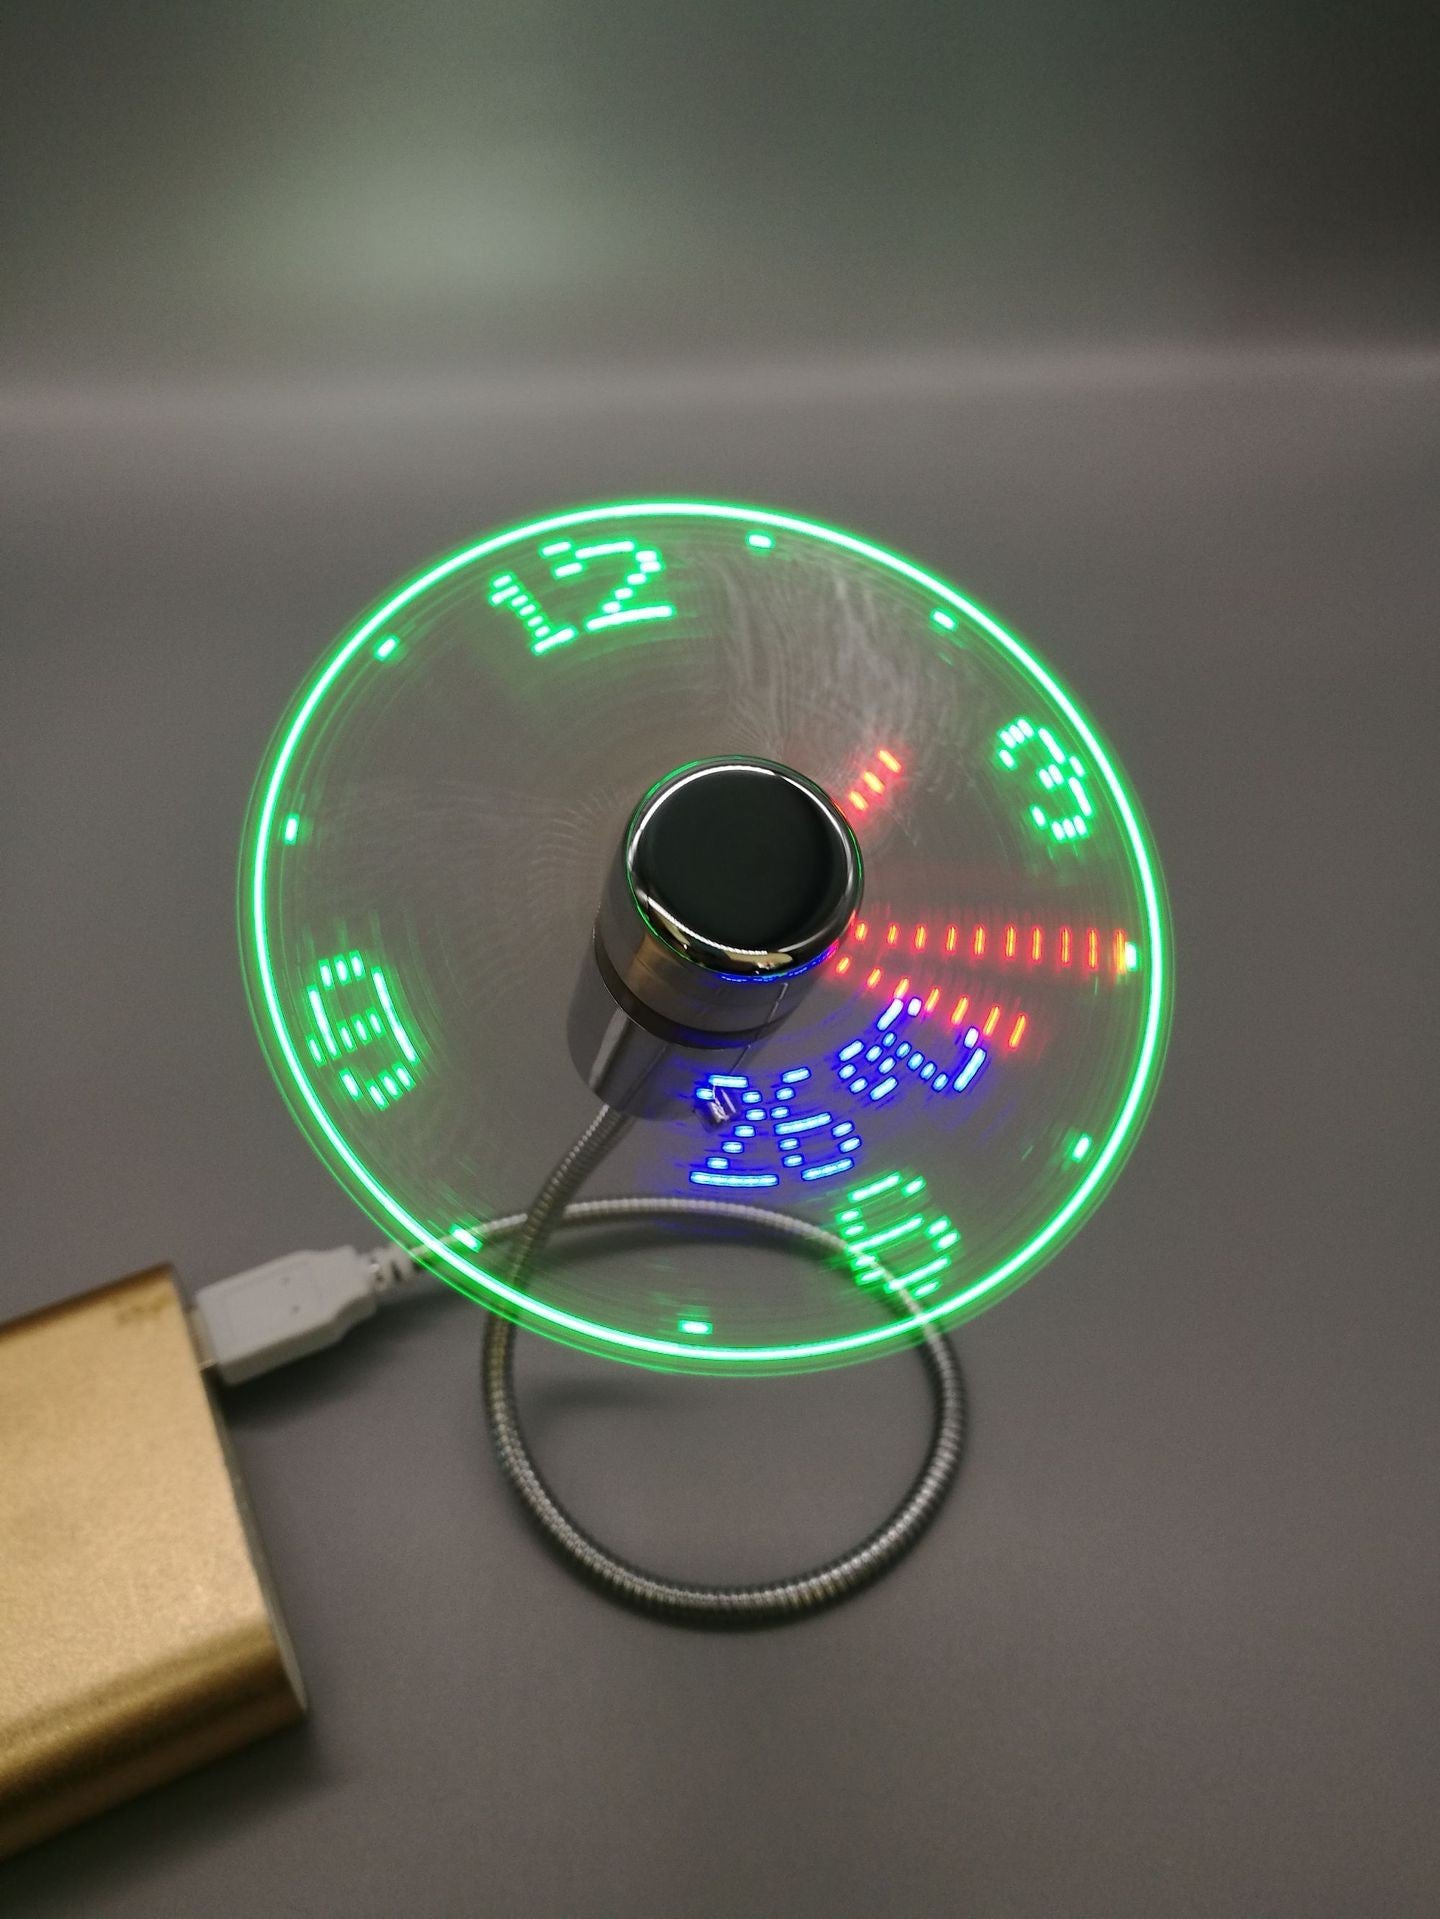 Mini USB Clock Fan with Temperature Display